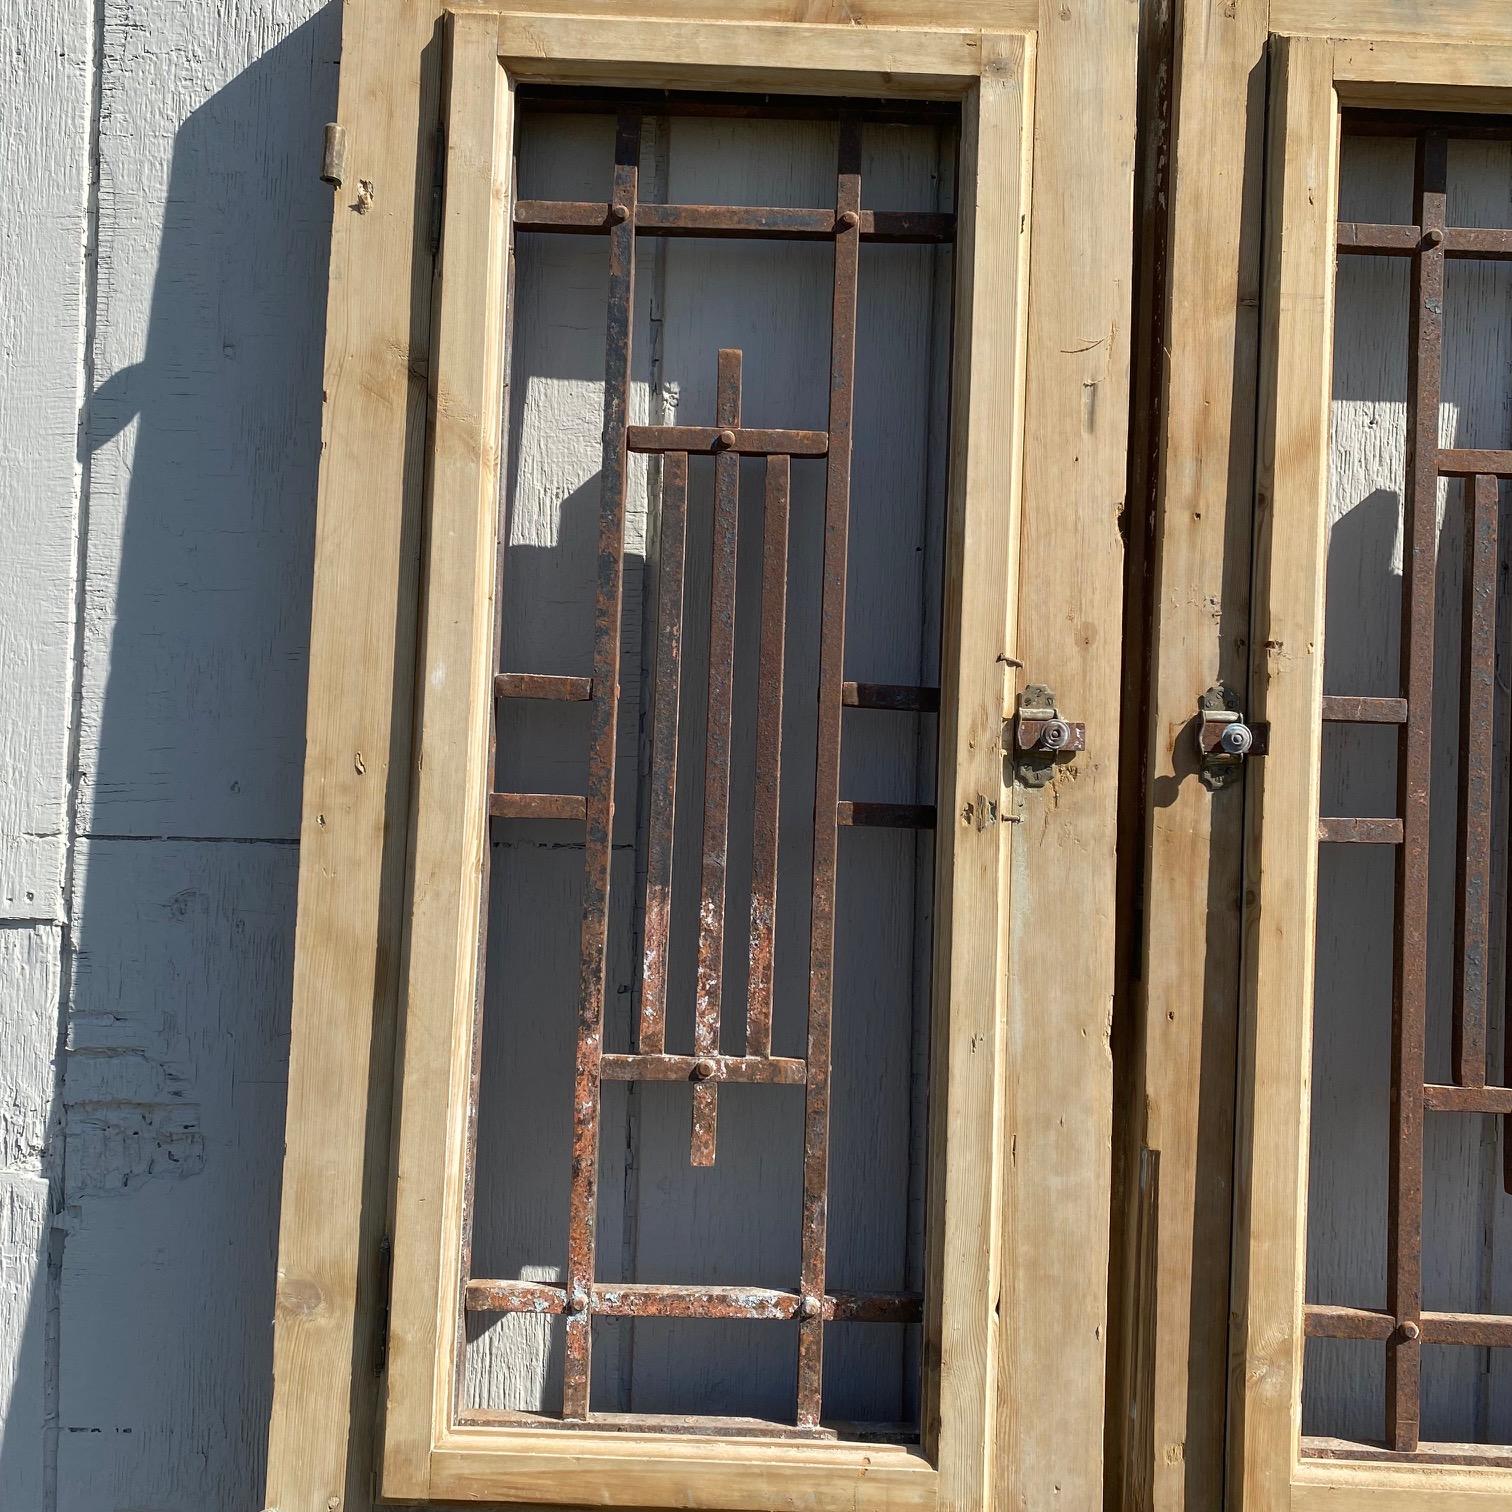 Paar atemberaubende gestrippt 19. Jahrhundert Französisch Türen mit Schmiedeeisen, mit kühnen geformten Detail Framing die unteren Platten sowie die komplizierte schmiedeeiserne Einsätze, die offen, oben, die kunstvoll in einem schönen geometrischen